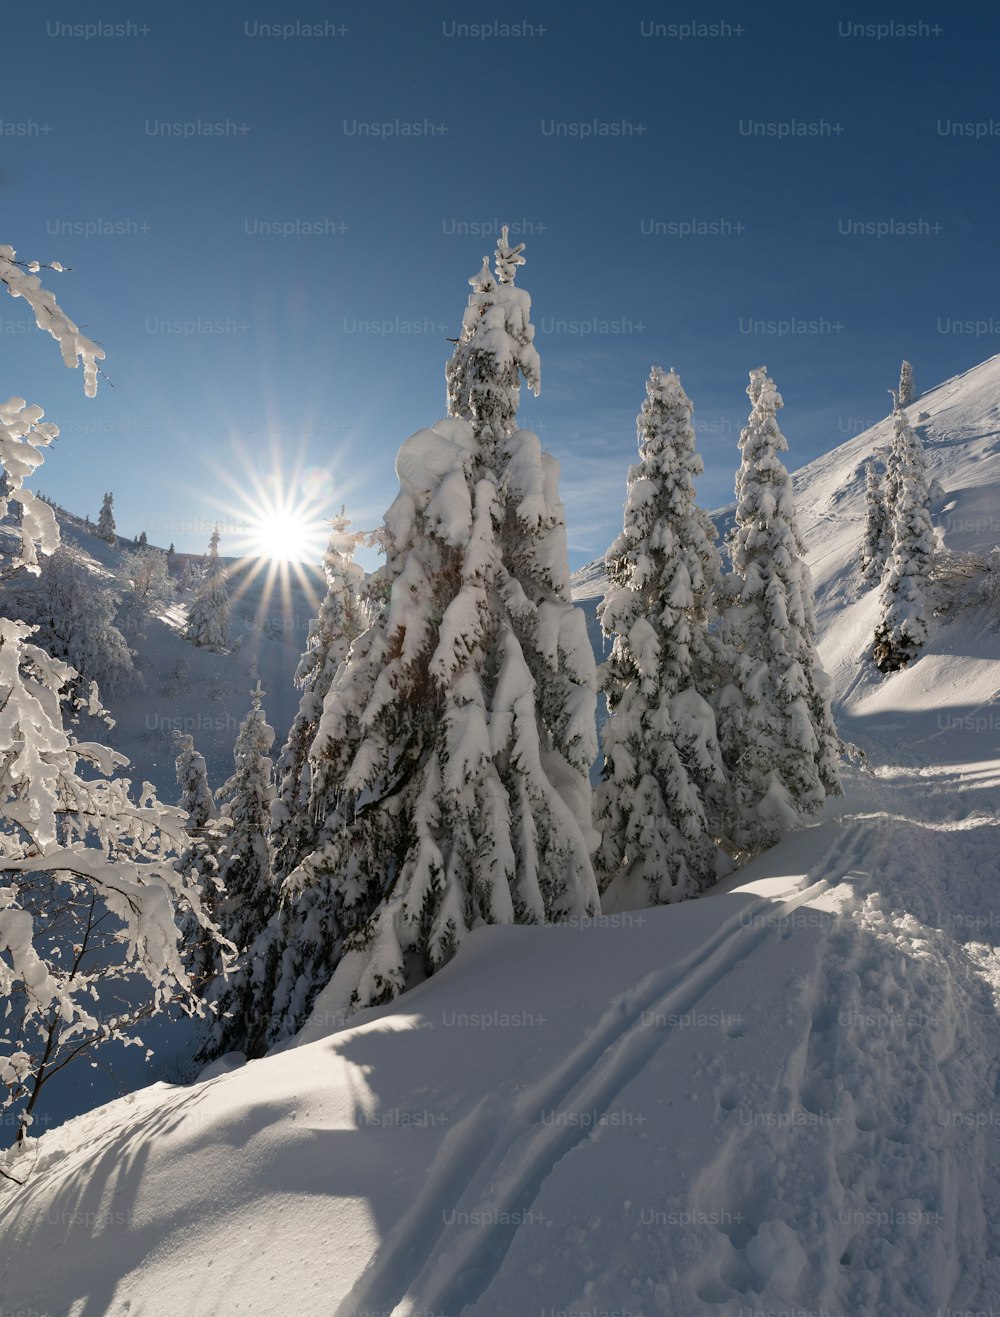 o sol brilha intensamente através das árvores cobertas de neve